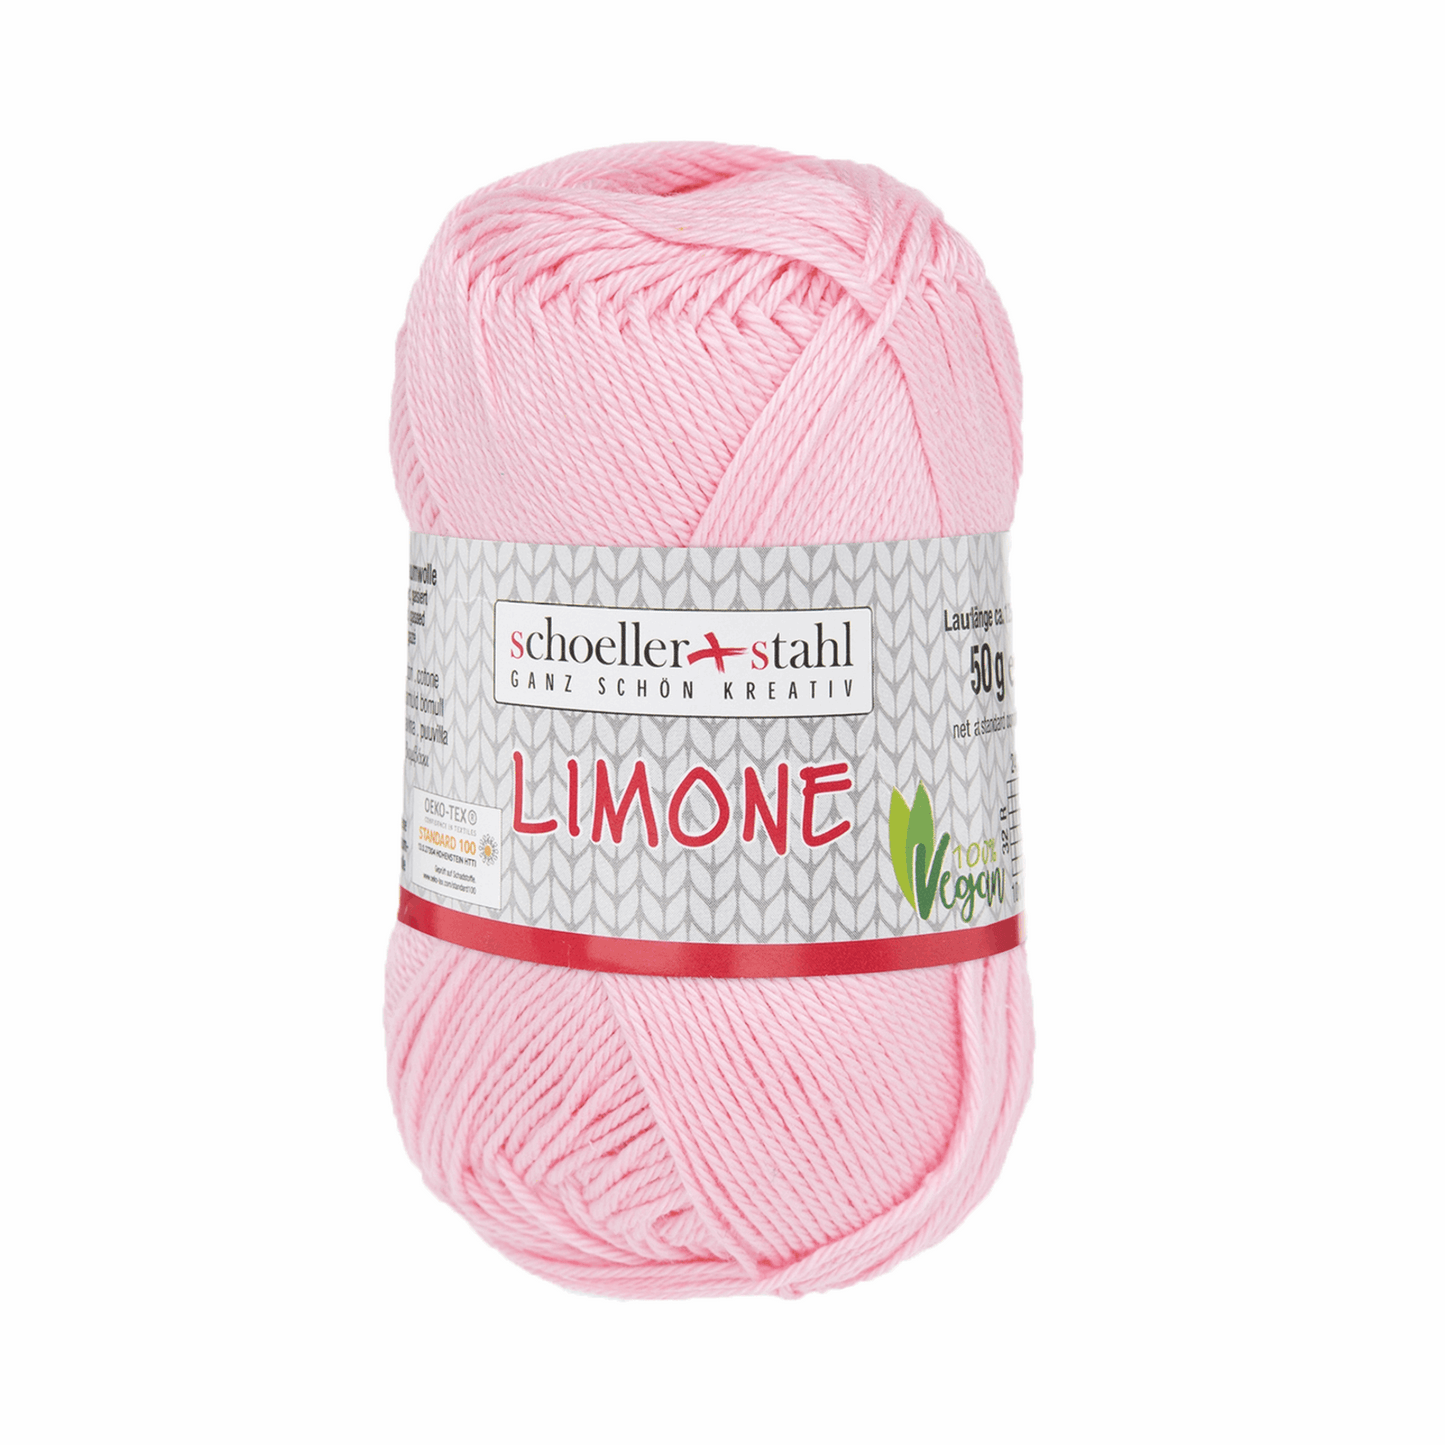 Limone 50g, 90130, Farbe 108, rosa